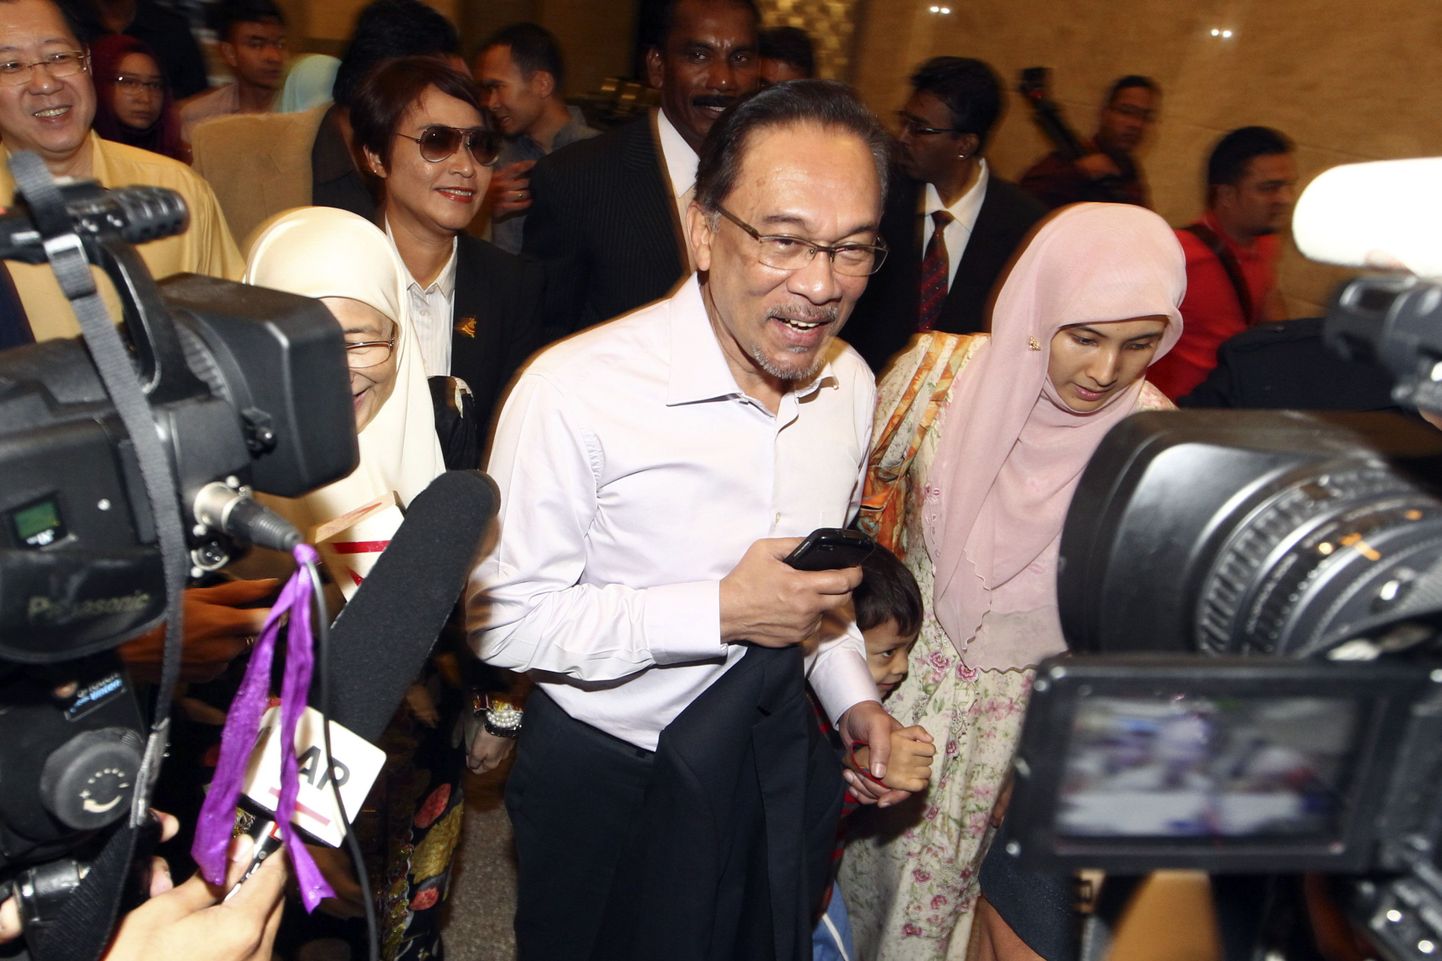 Malaisia opositsiooniliider Anwar Ibrahim täna kohtusse saabumas.